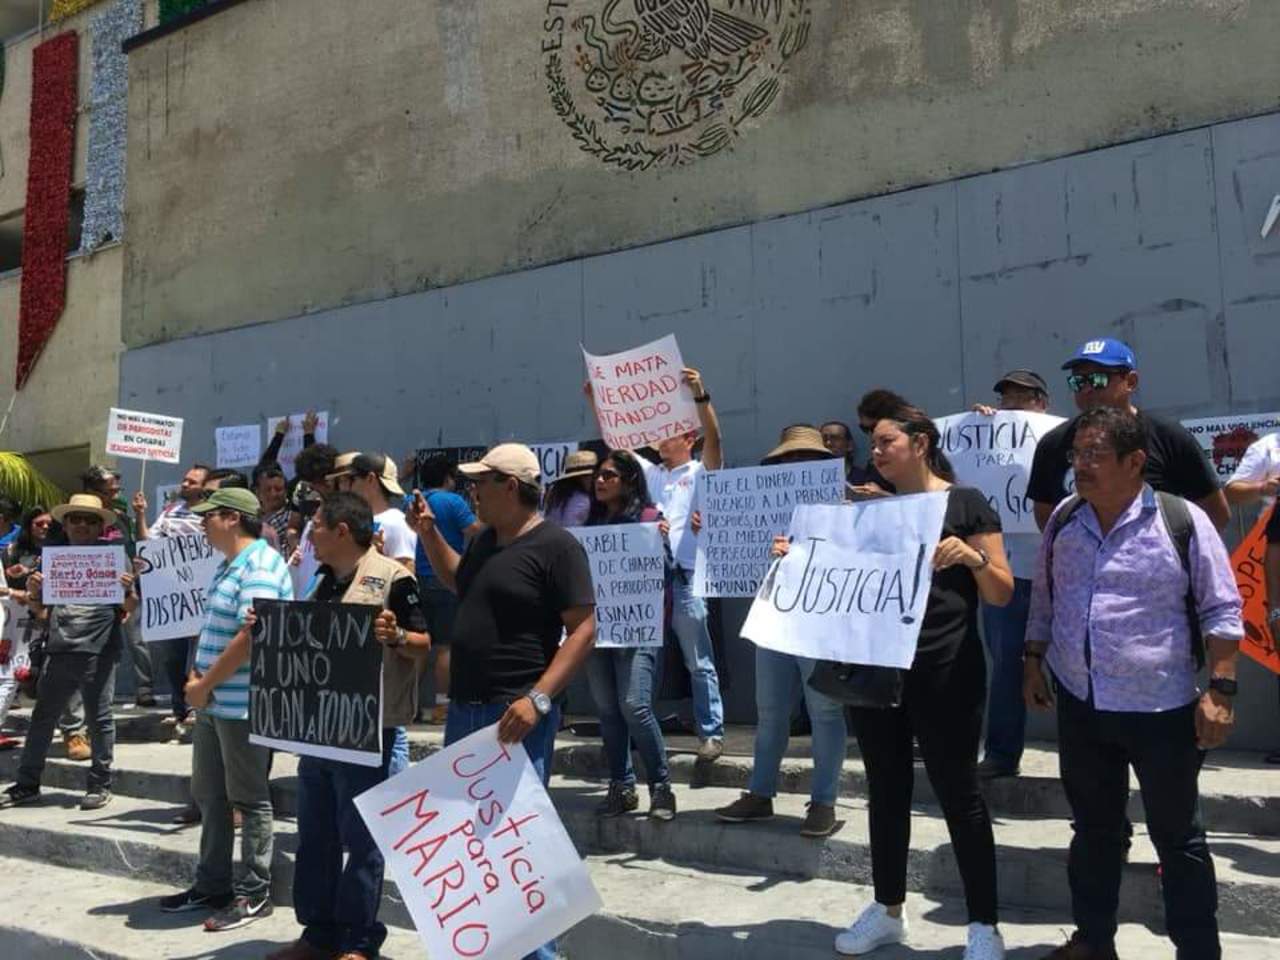 Los comunicadores pidieron justicia por el homicidio de Gómez Sánchez, corresponsal de la Organización Editorial Mexicana (OEM) en el norte de Chiapas, en una zona colindante con el estado de Tabasco. (ARCHIVO)